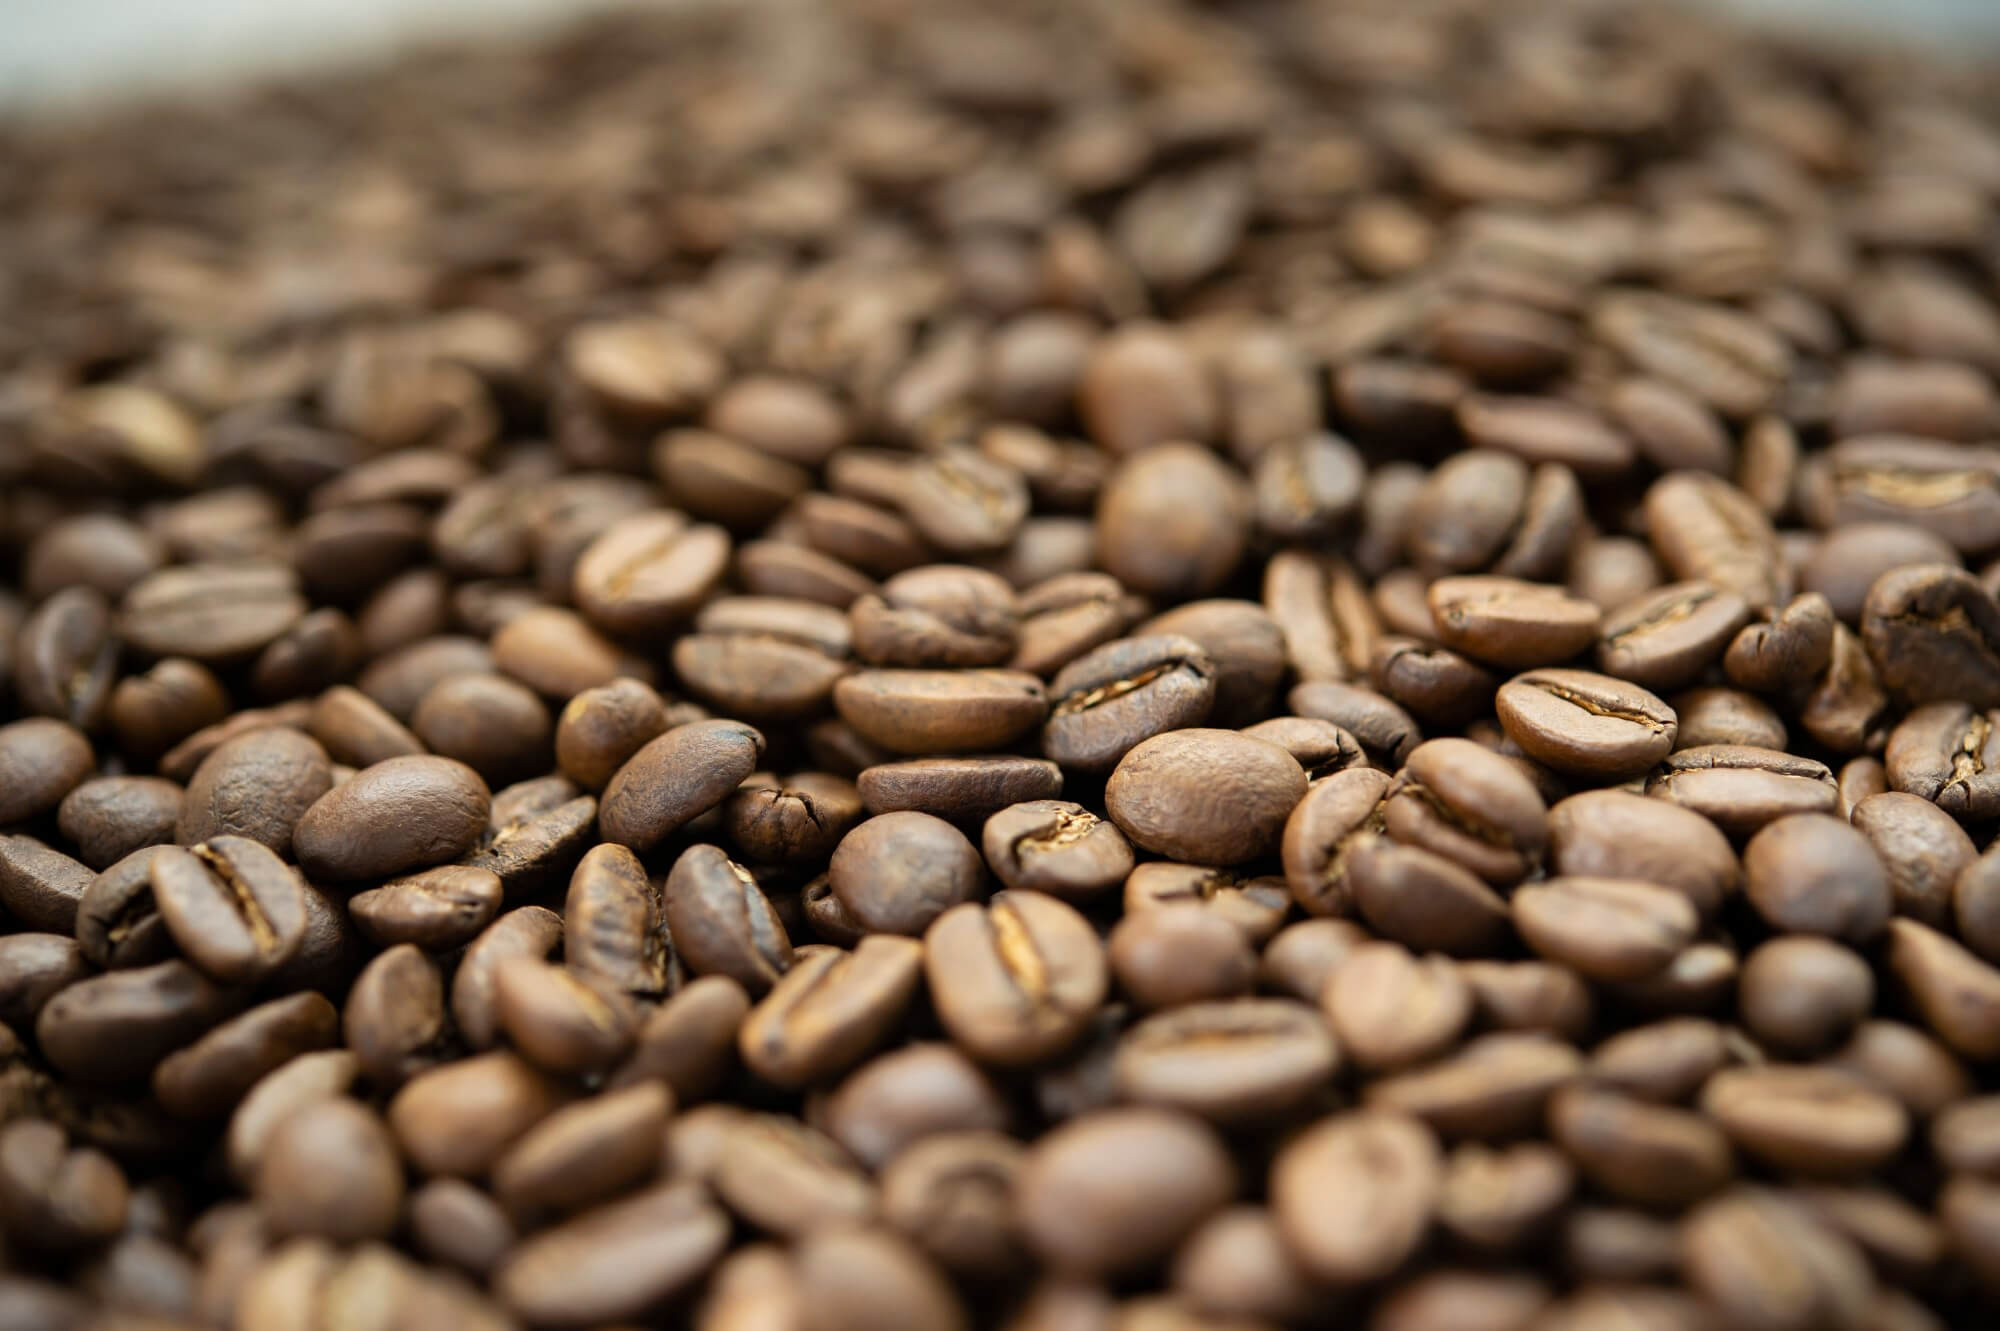 99.9%カフェインレスのスペシャルティコーヒー｜ロクメイコーヒー